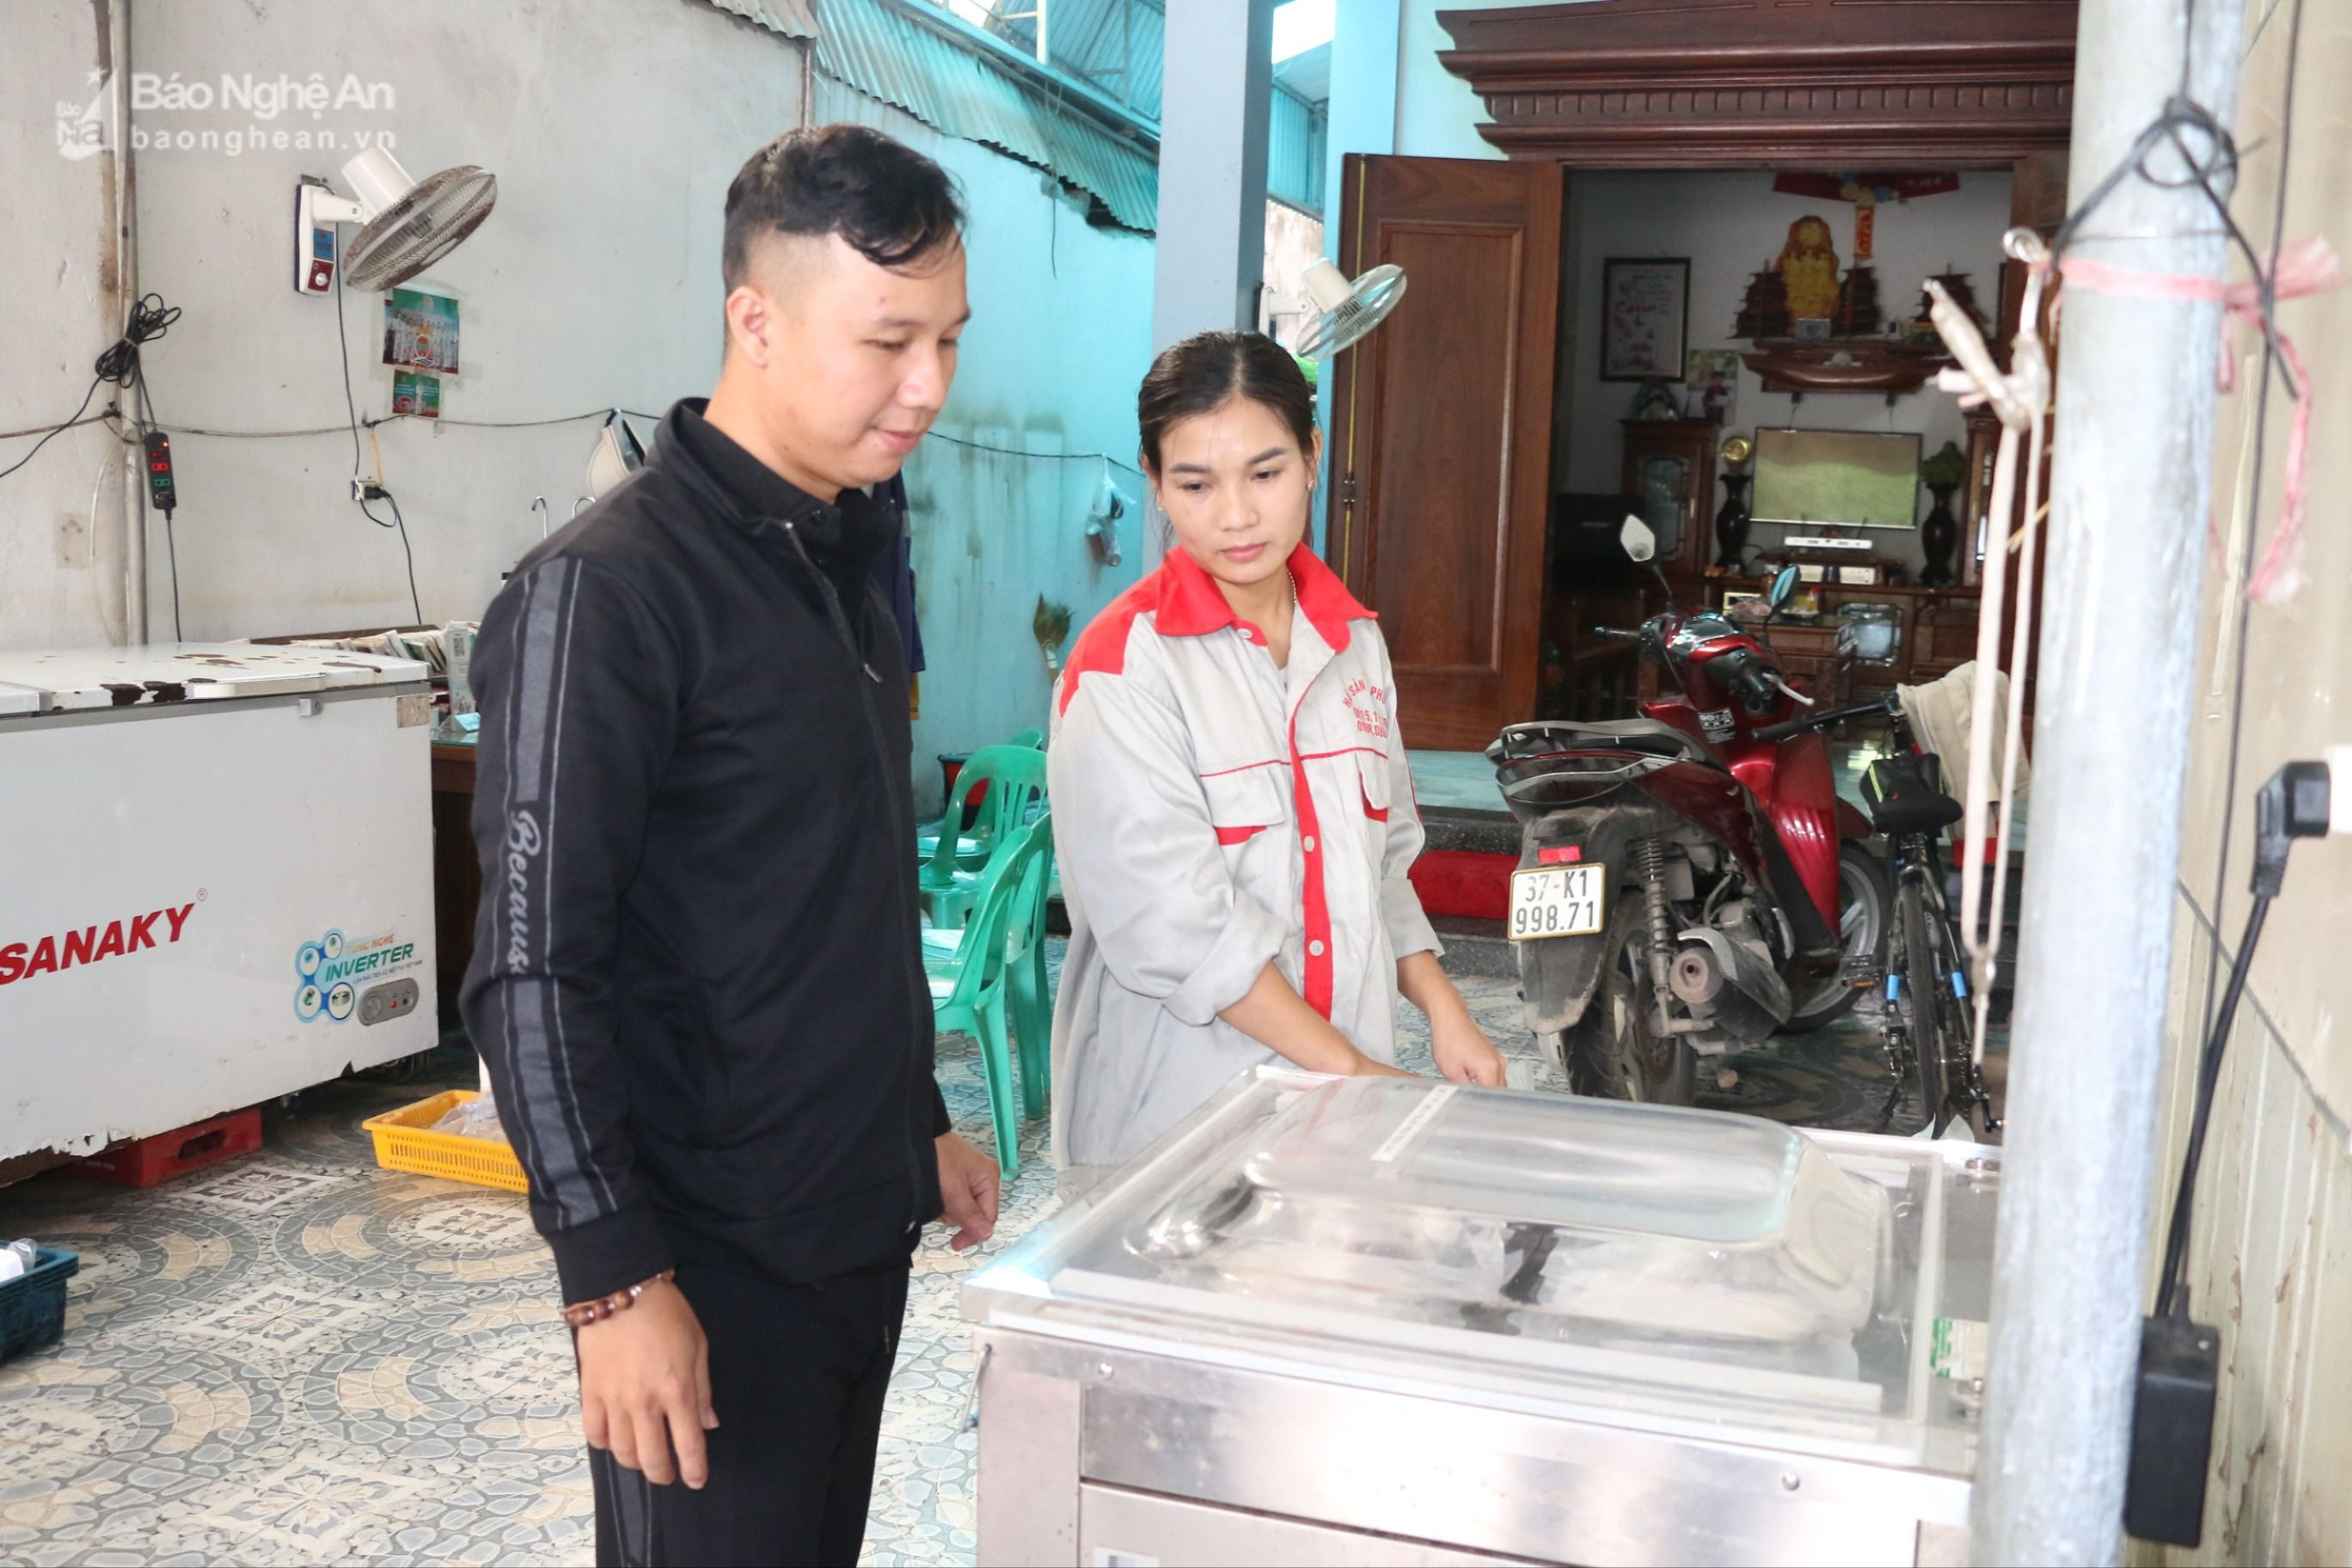 Cơ sở sản xuất chế biến hải sản do phụ nữ làm chủ ở phường Nghi Thu - thị xã Cửa Lò (2).JPG